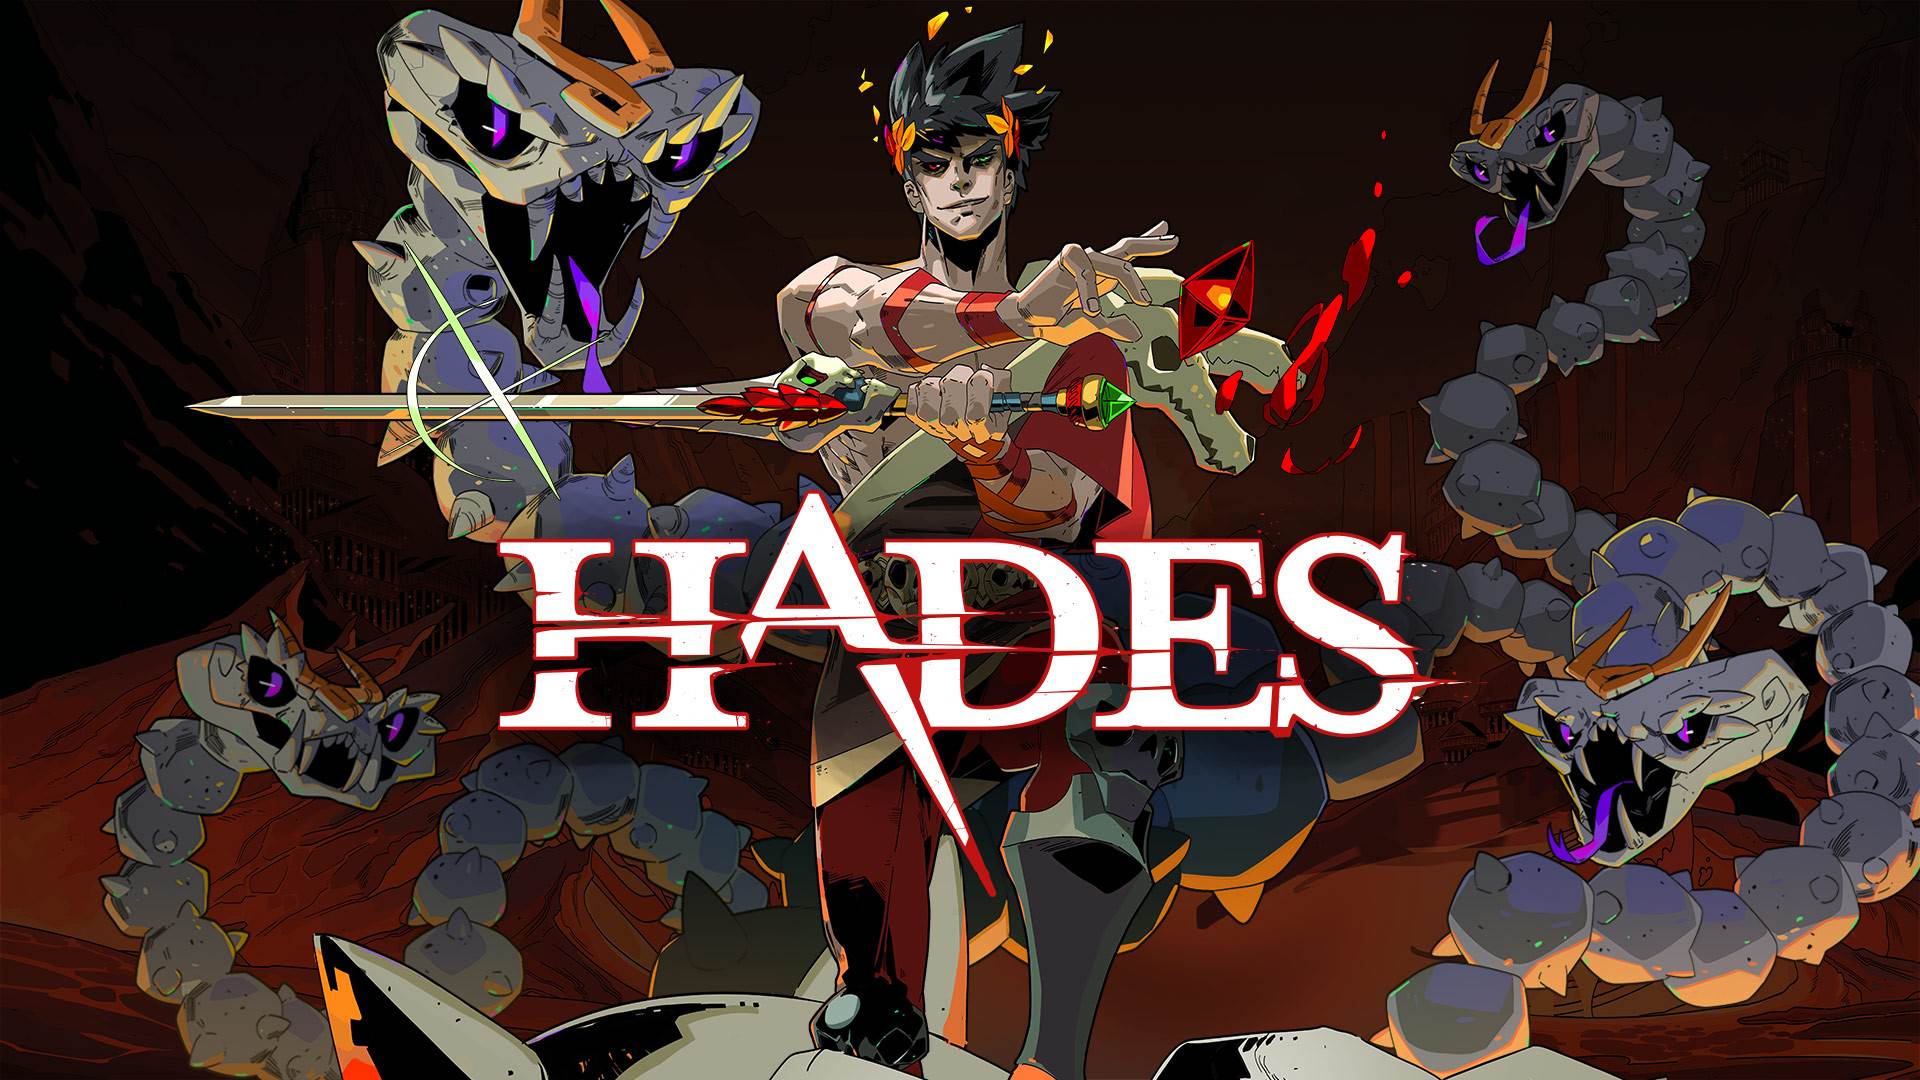 زگرئوس و هایدرا در بازی Hades